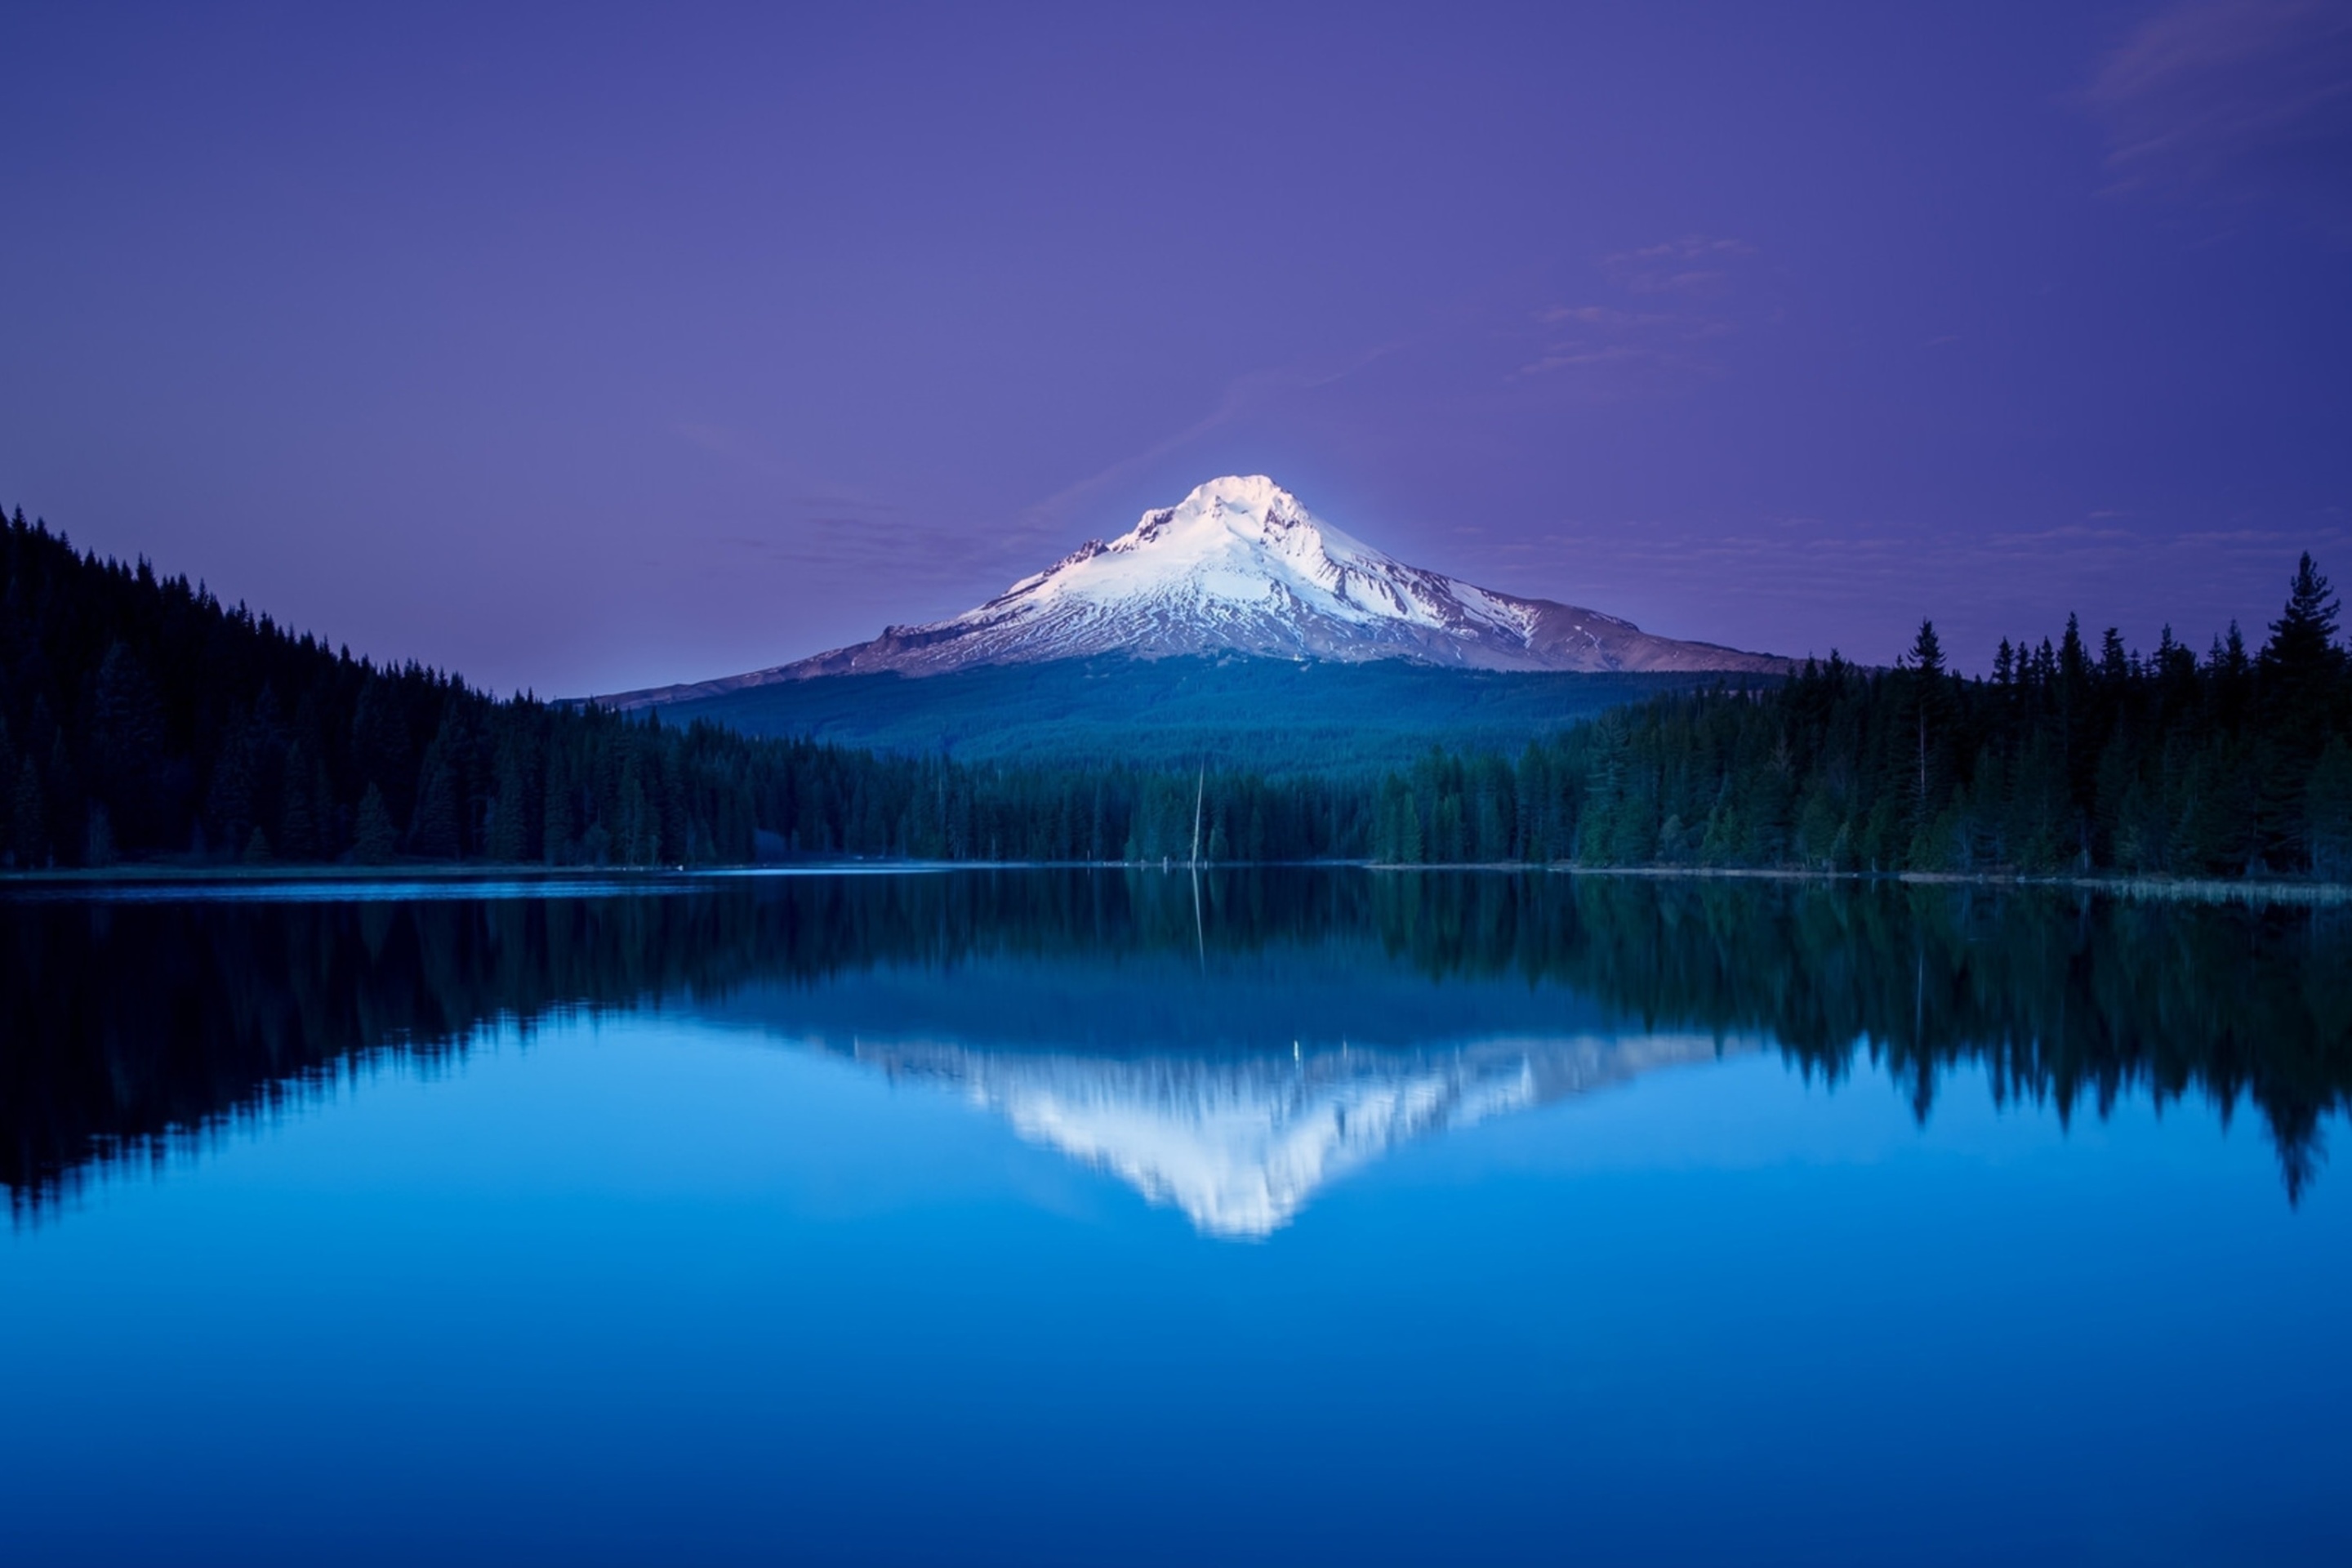 Обои Mountains with lake reflection 2880x1920